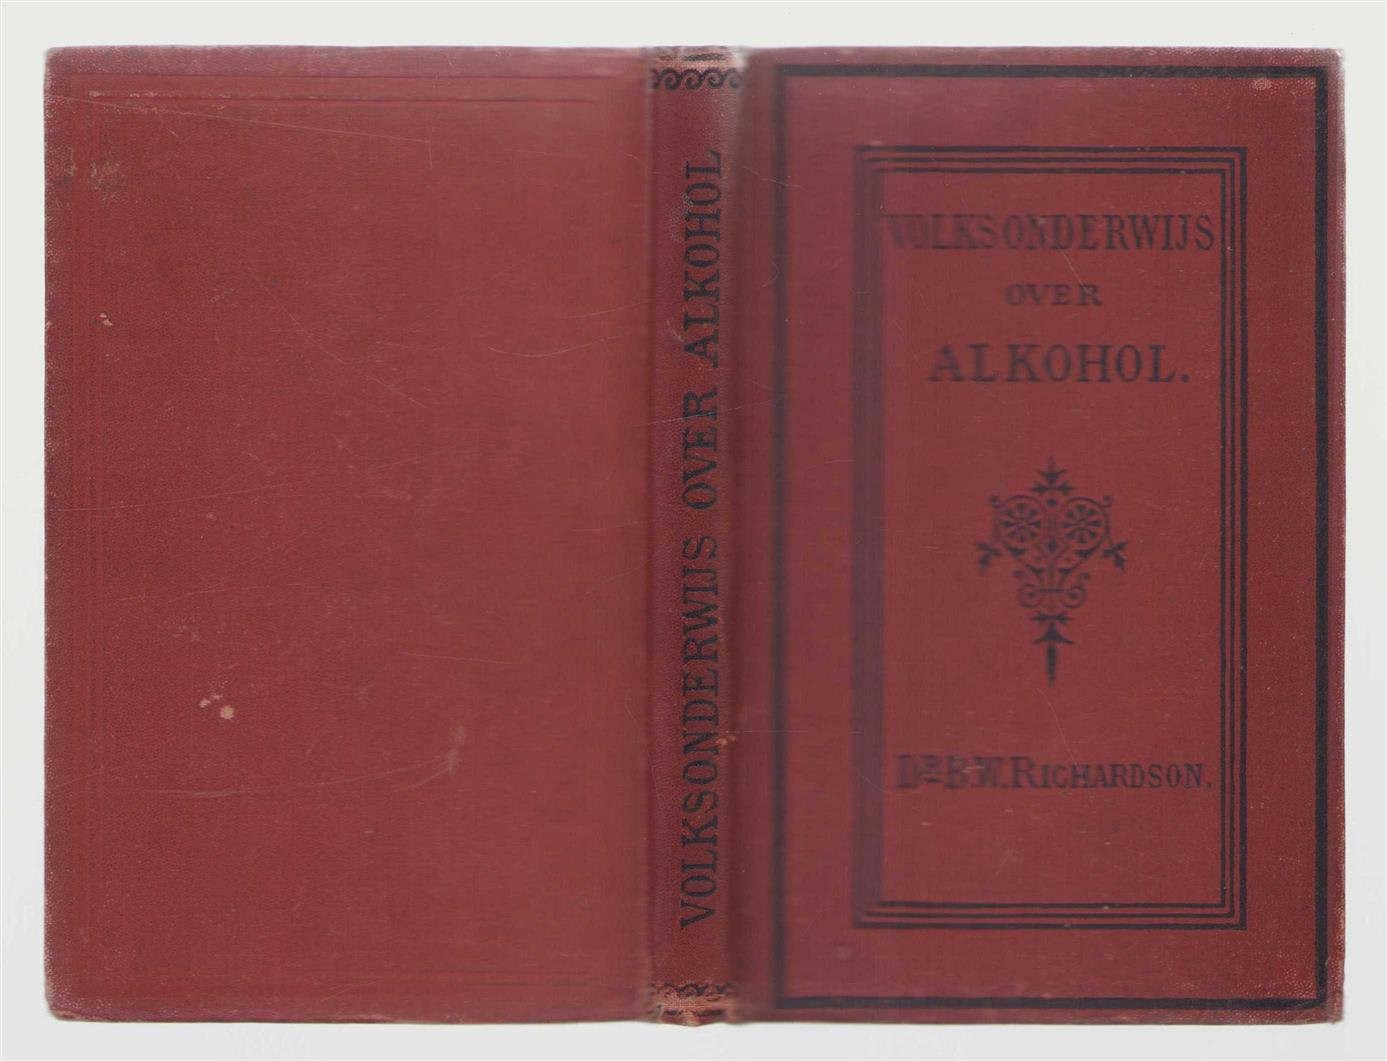 Benjamin Ward Richardson - Volksonderwijs over alkohol